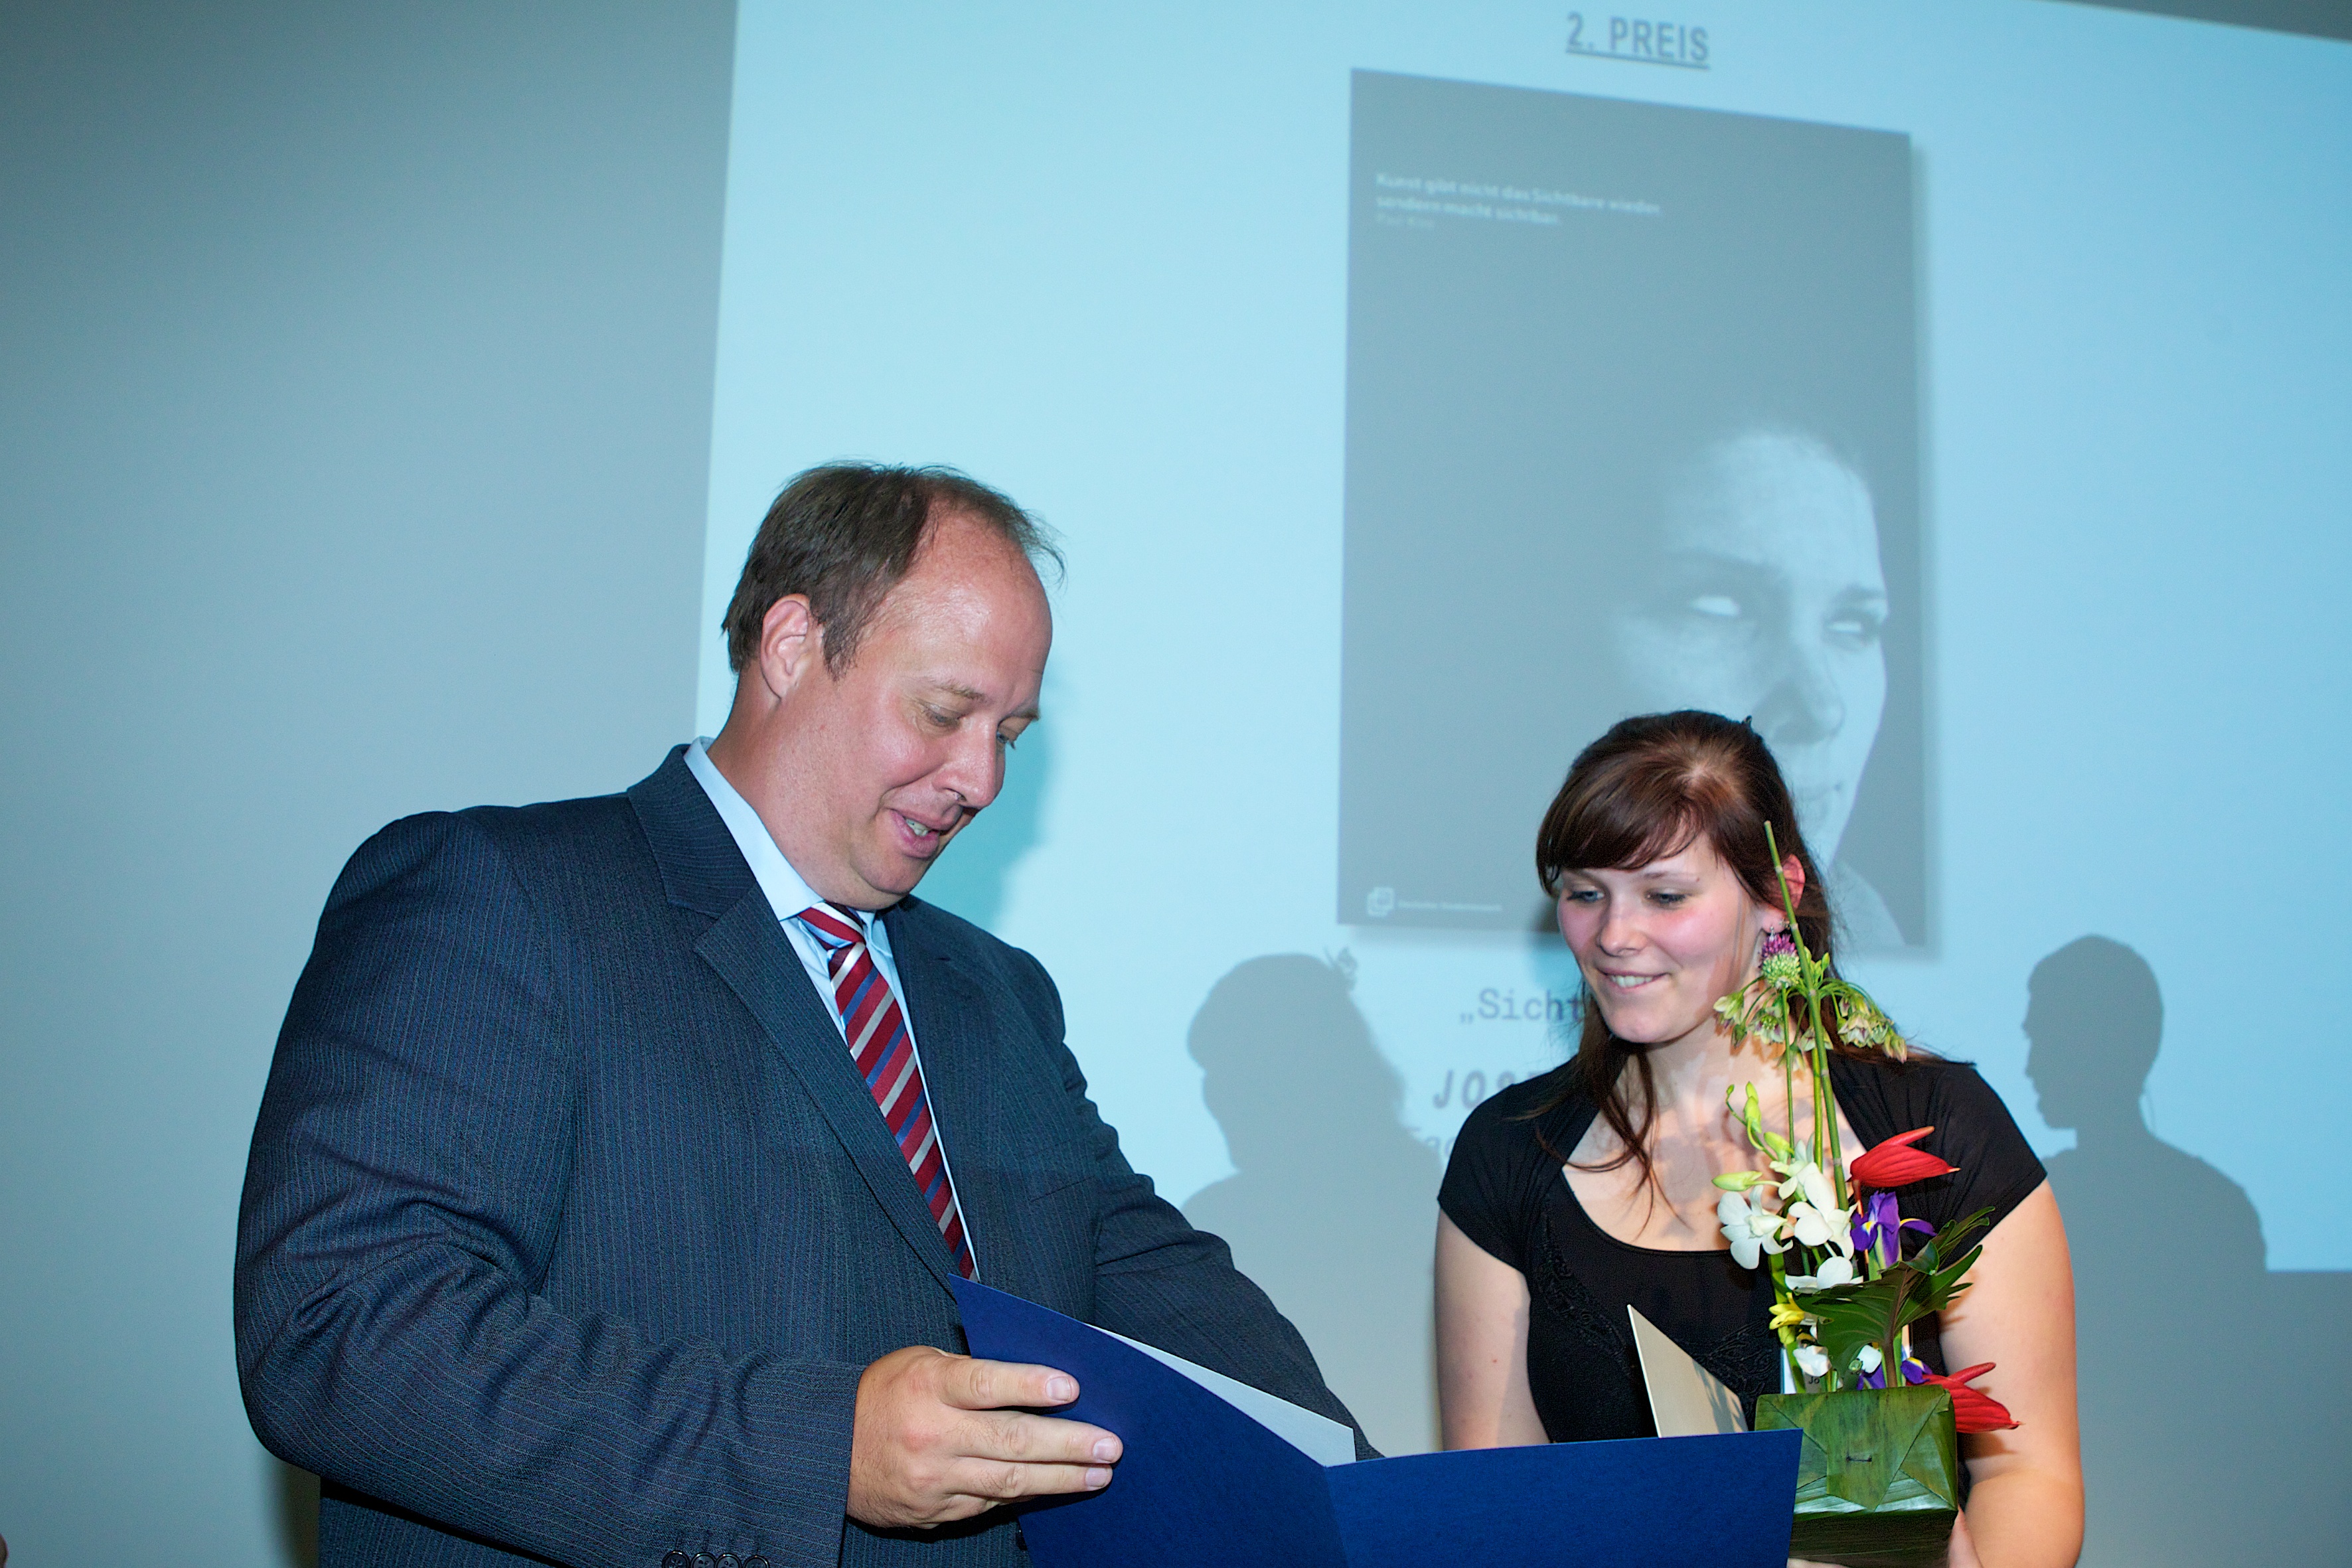 Staatssekretär Dr. Helge Braun übergibt einen 2. Preis an Josephin Klamet | (c) Kay Herschelmann